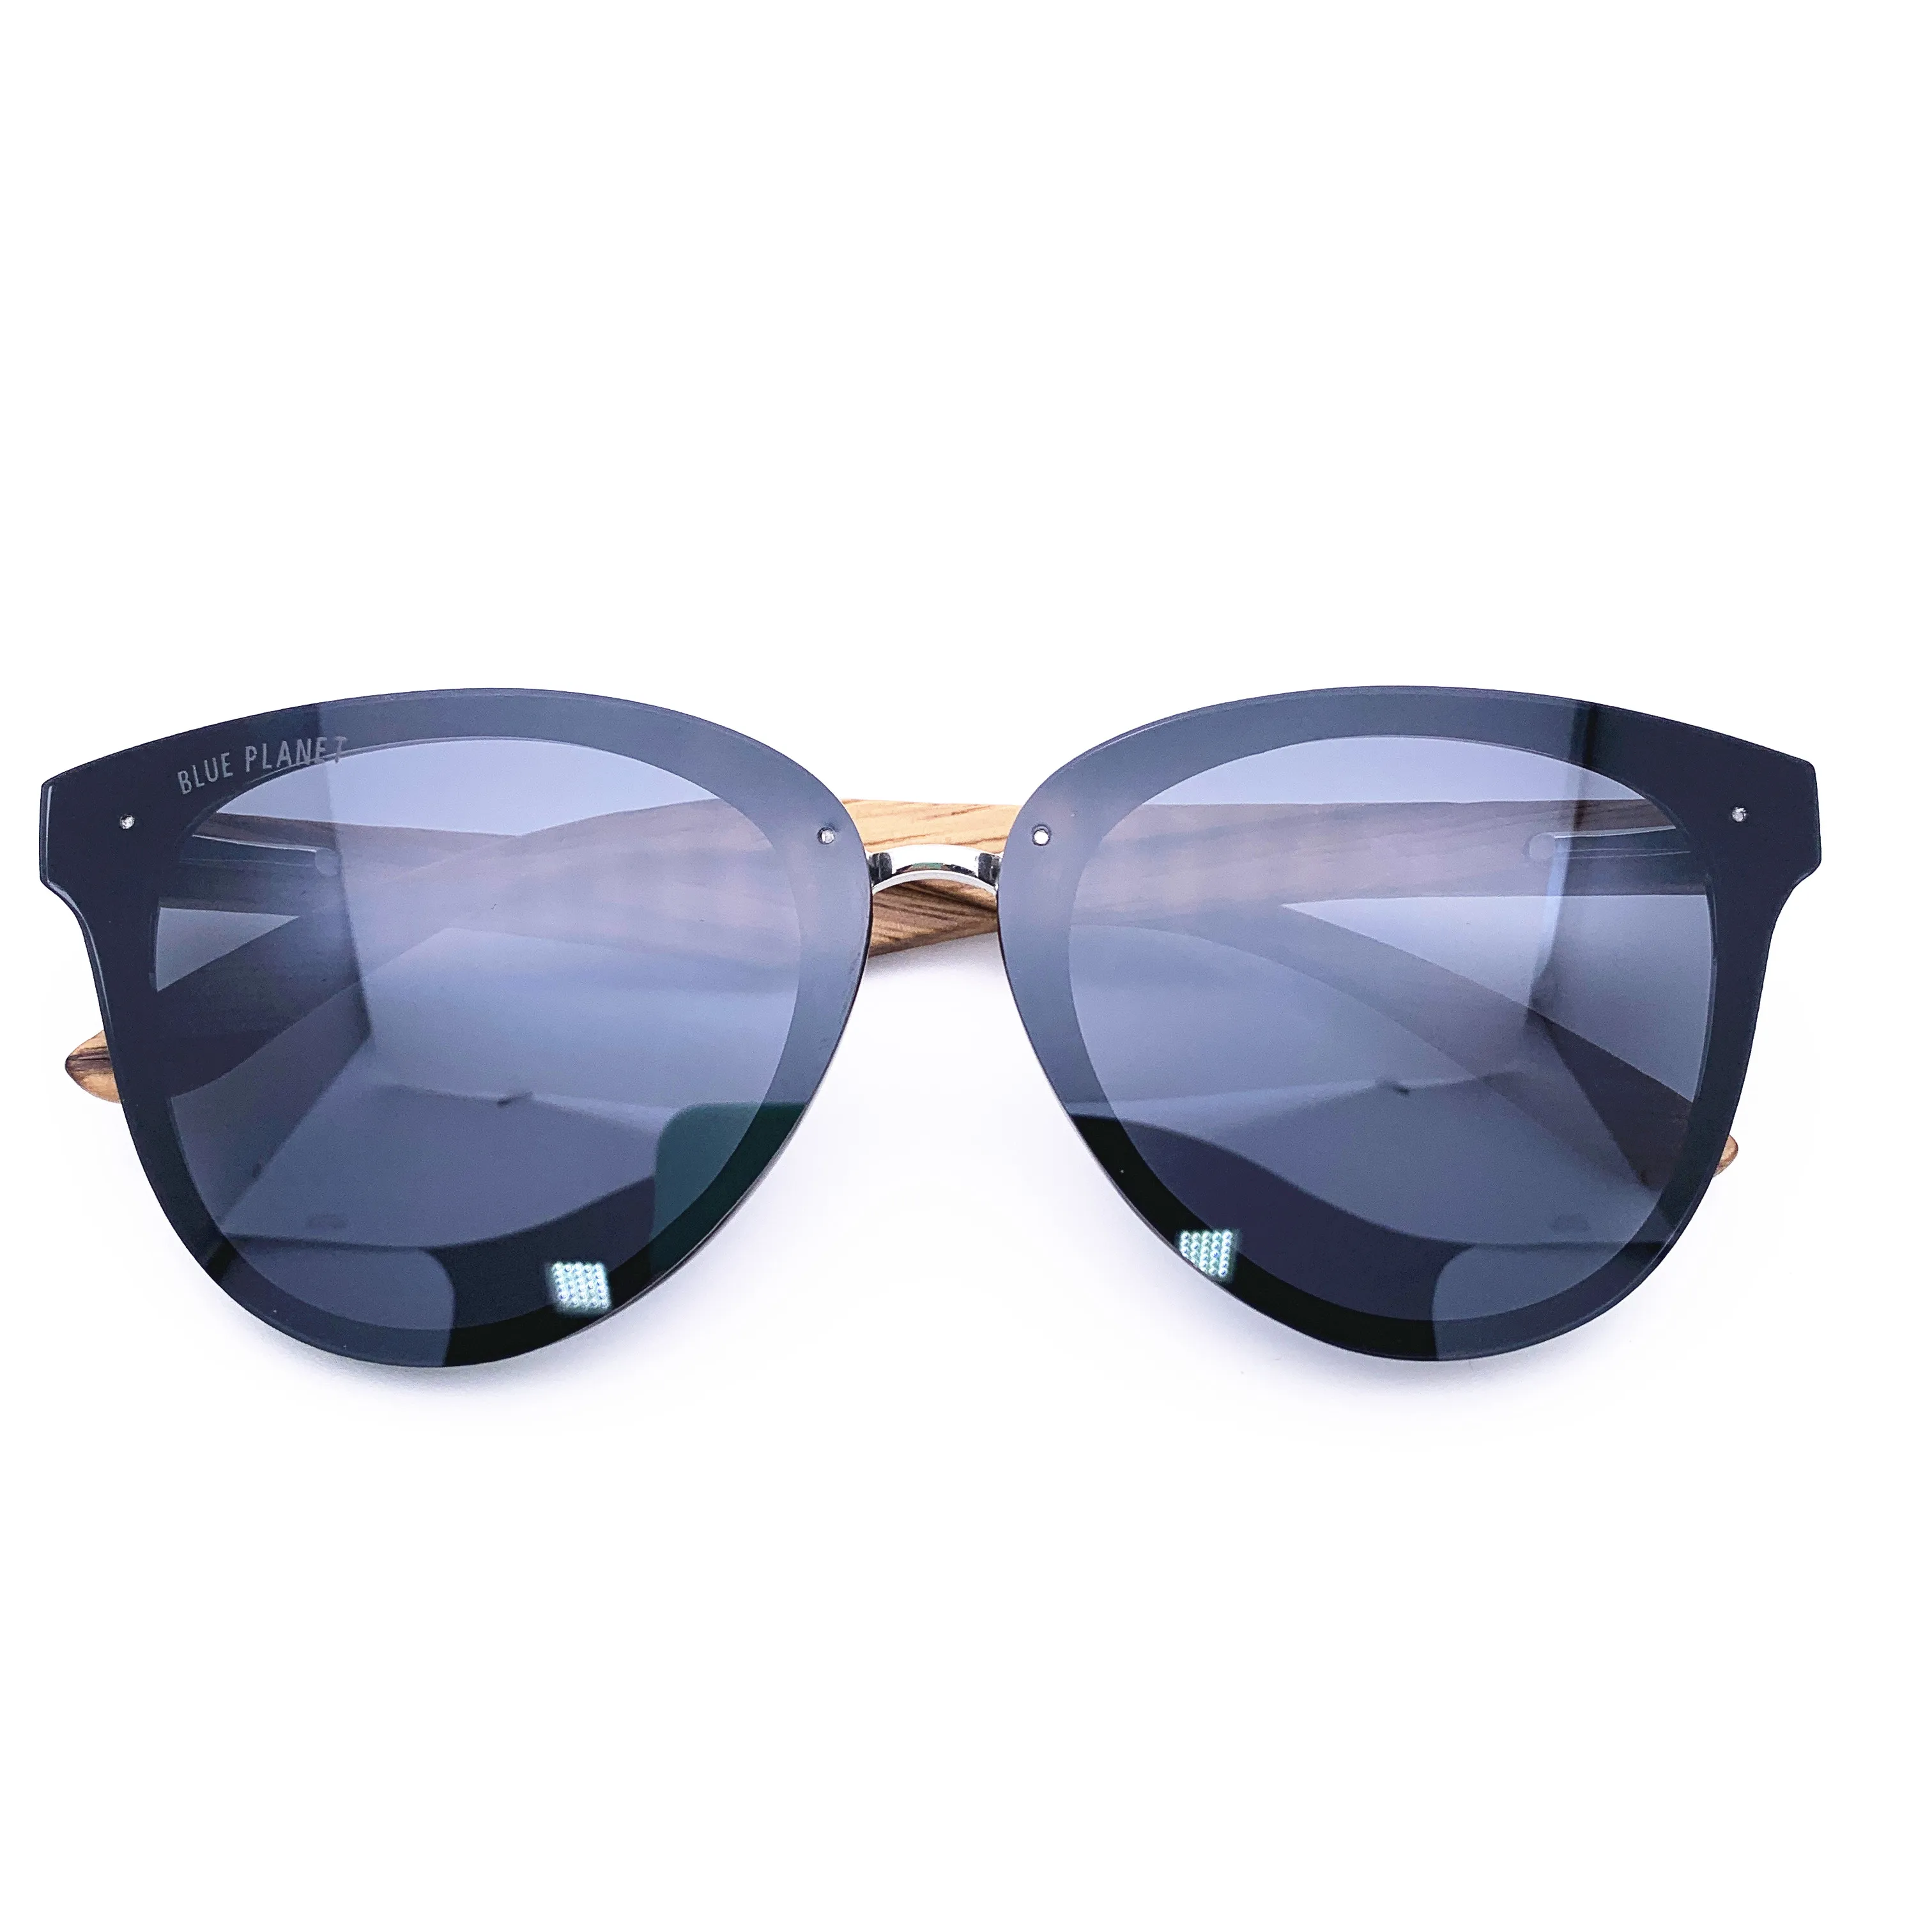 Солнечные очки Belight с бамбуковой оправой для мужчин и женщин поляризационные